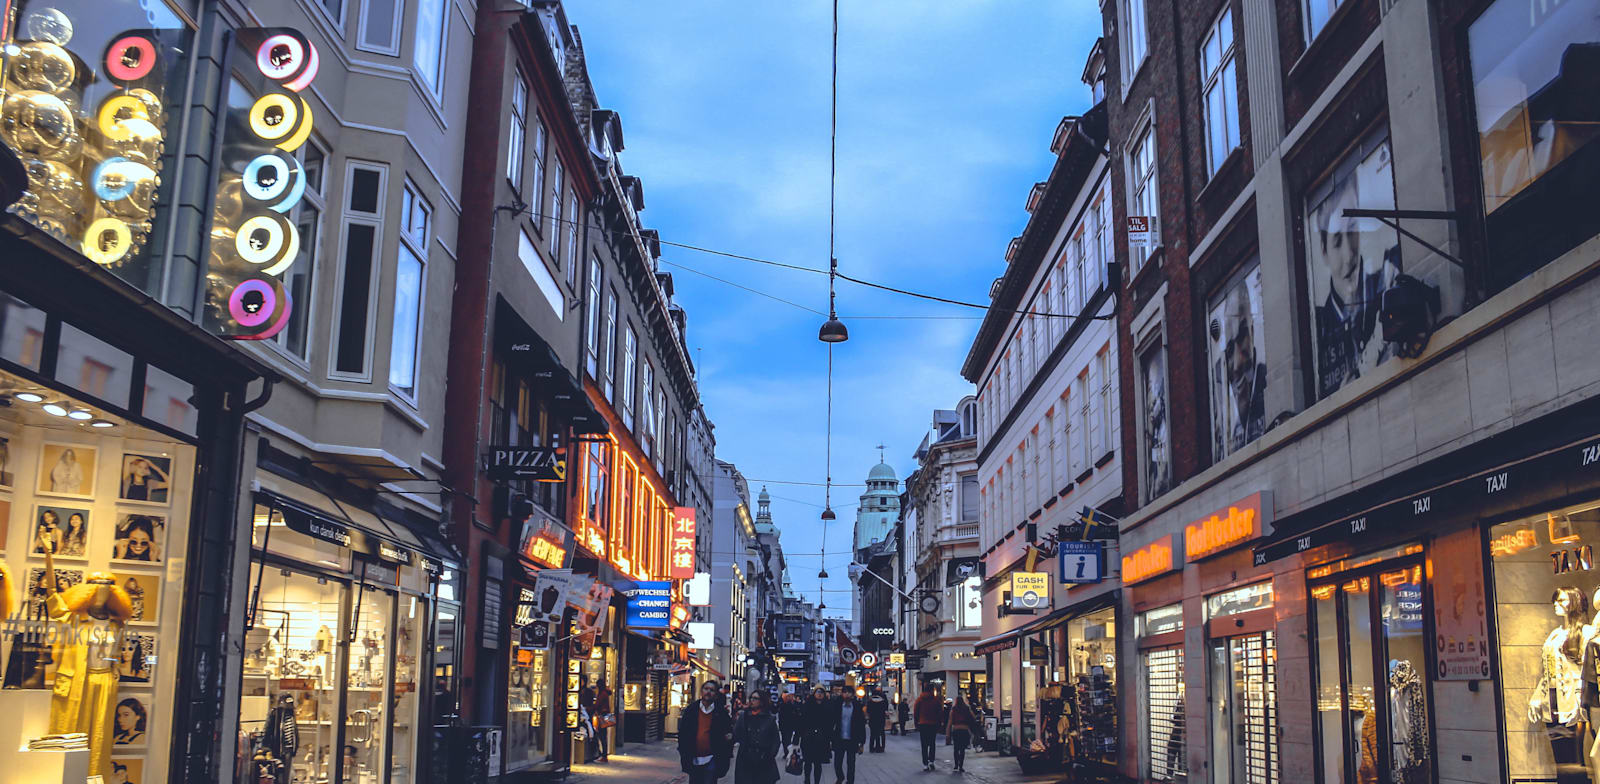 המדרחוב הראשי של קופנהגן. עיר ידידותית להולכי הרגל / צילום: Shutterstock